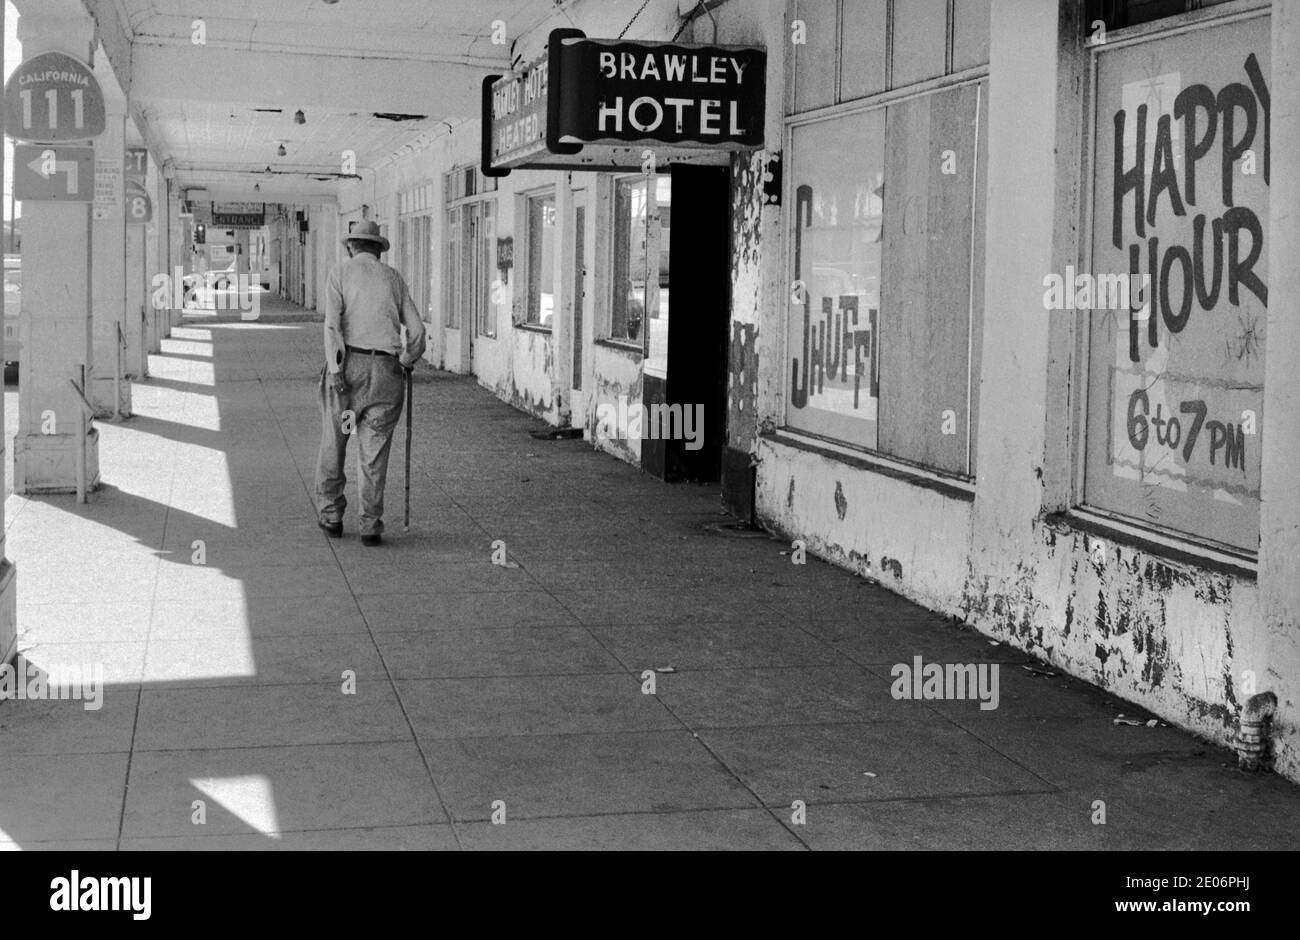 Uomo anziano che gratta la sua povertà urbana inferiore fuori del poco costoso e corre giù Brawley Hotel facendo pubblicità Happy Hour, Brawley, New Mexico 1972 anni 1970 USA HOMER SYKES Foto Stock